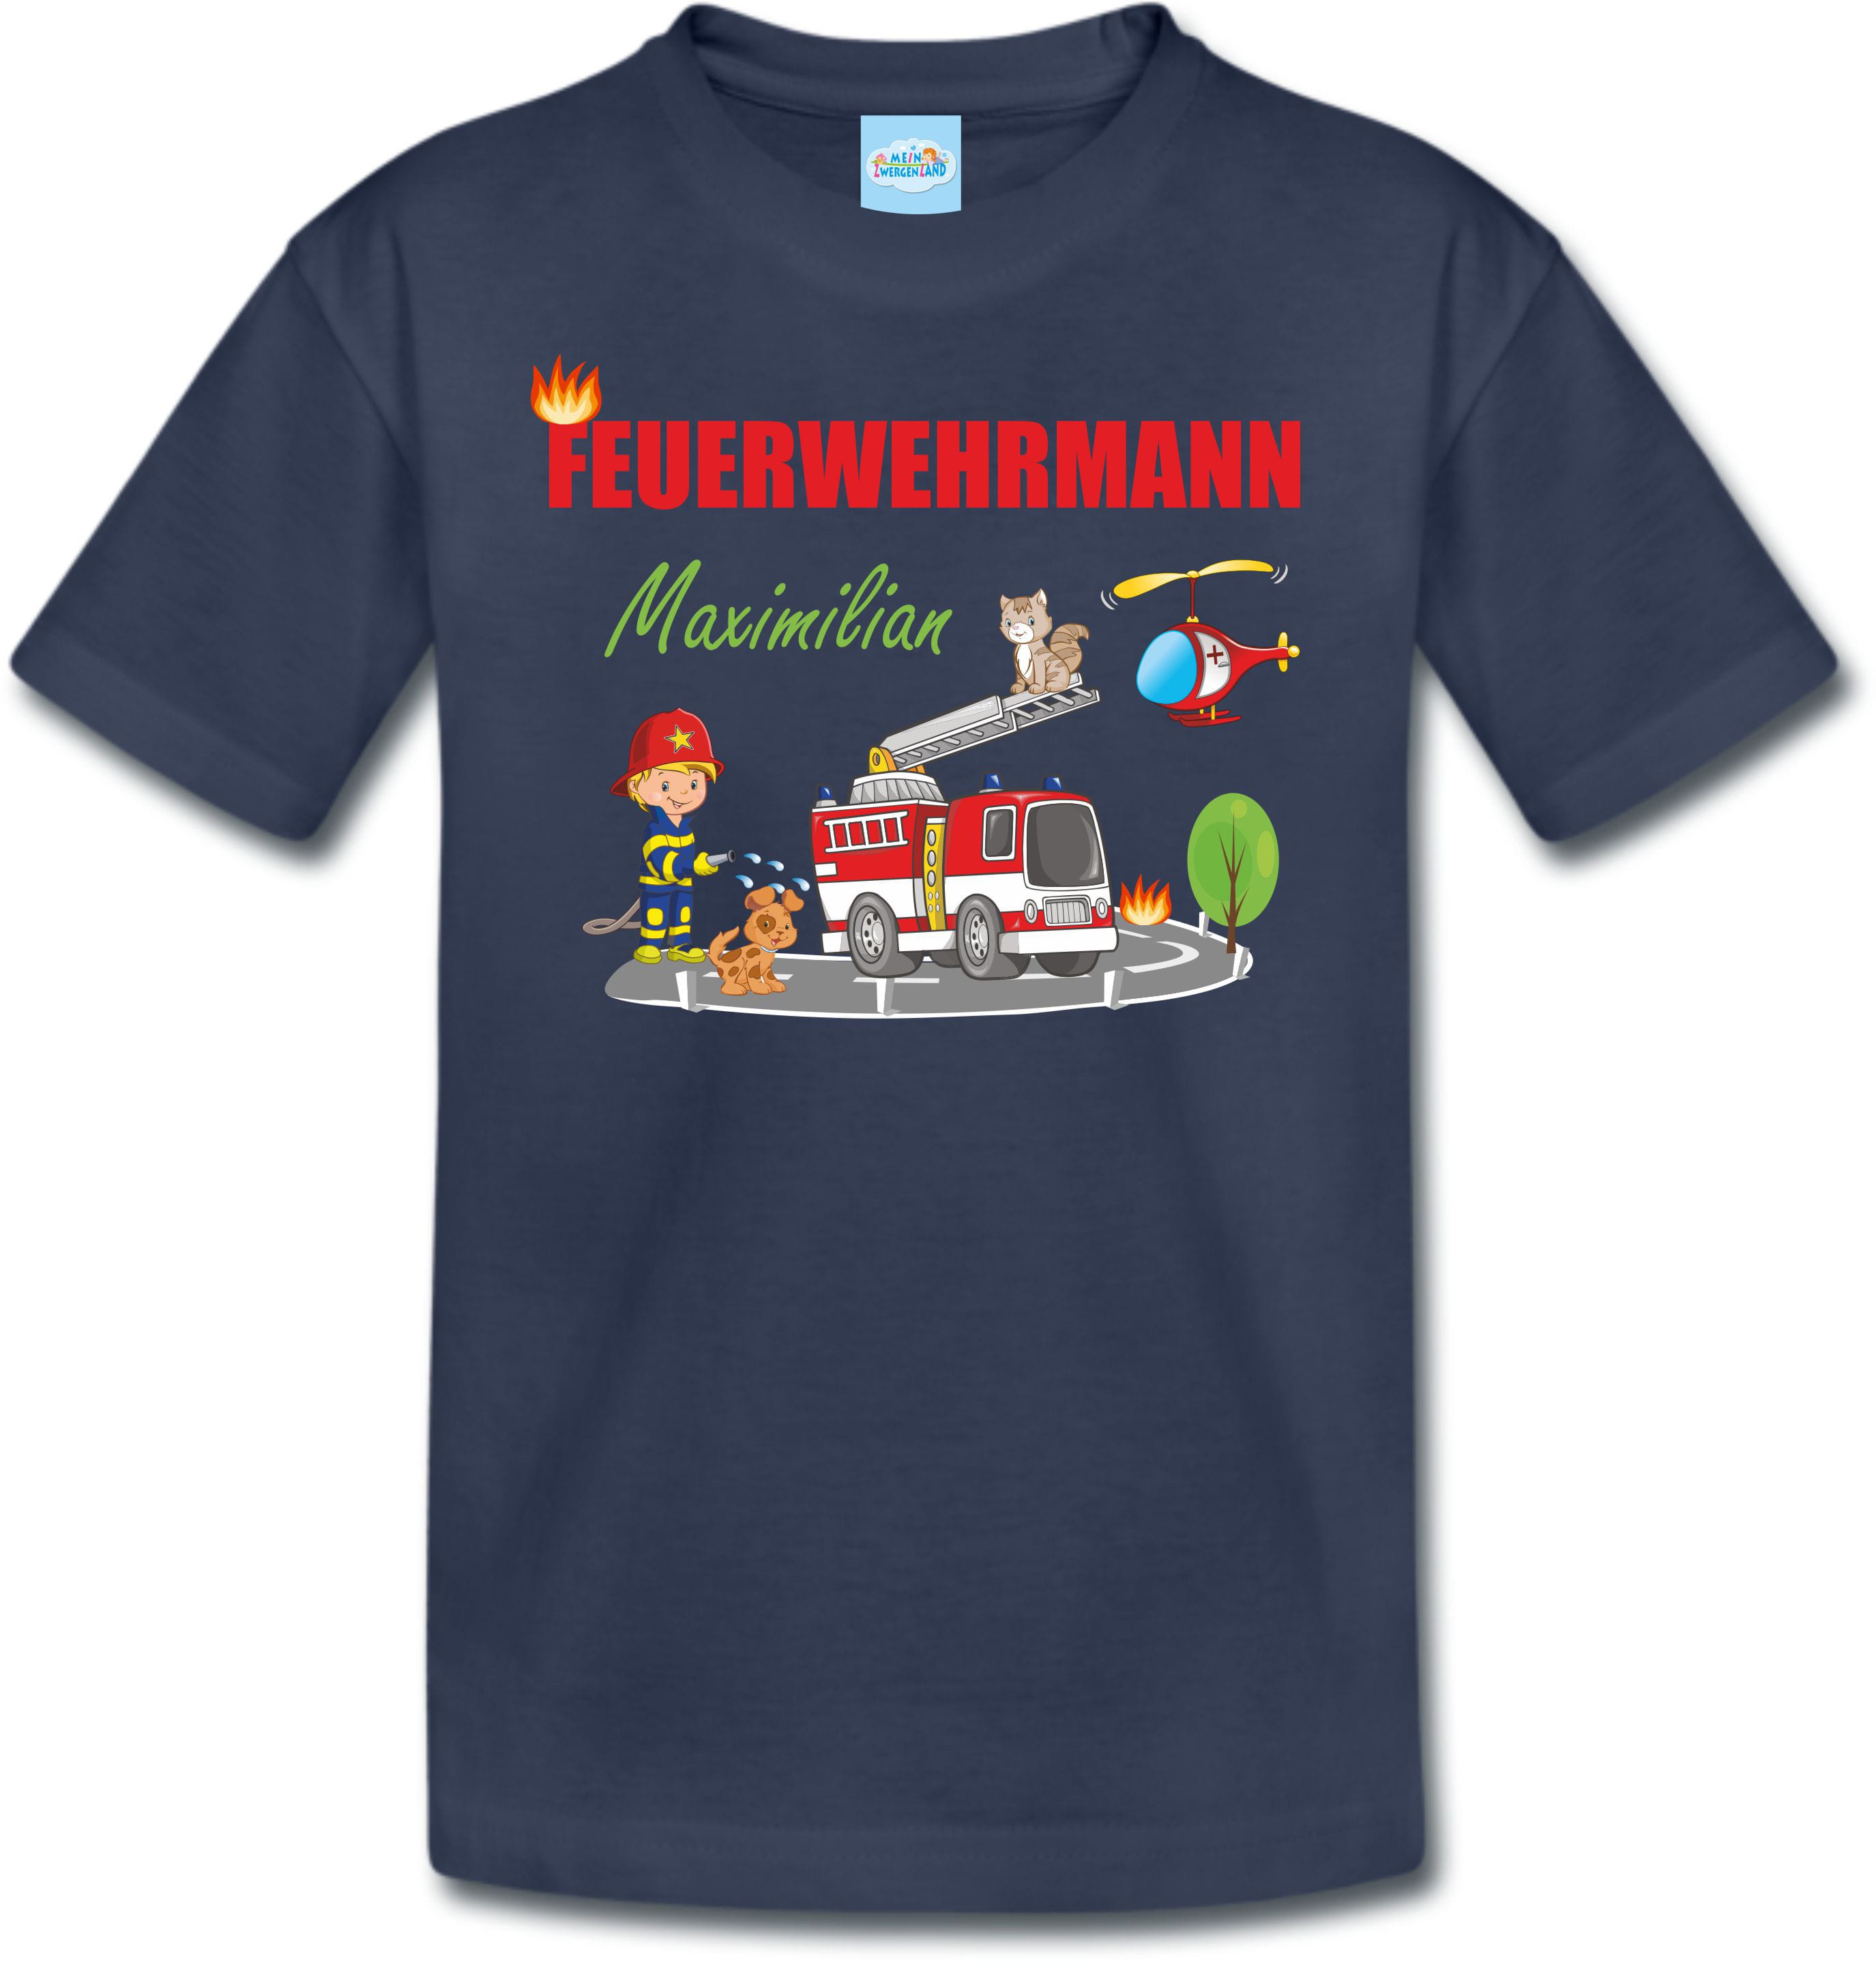 Feuerwehrmann Shirt T-Shirt für Jungen